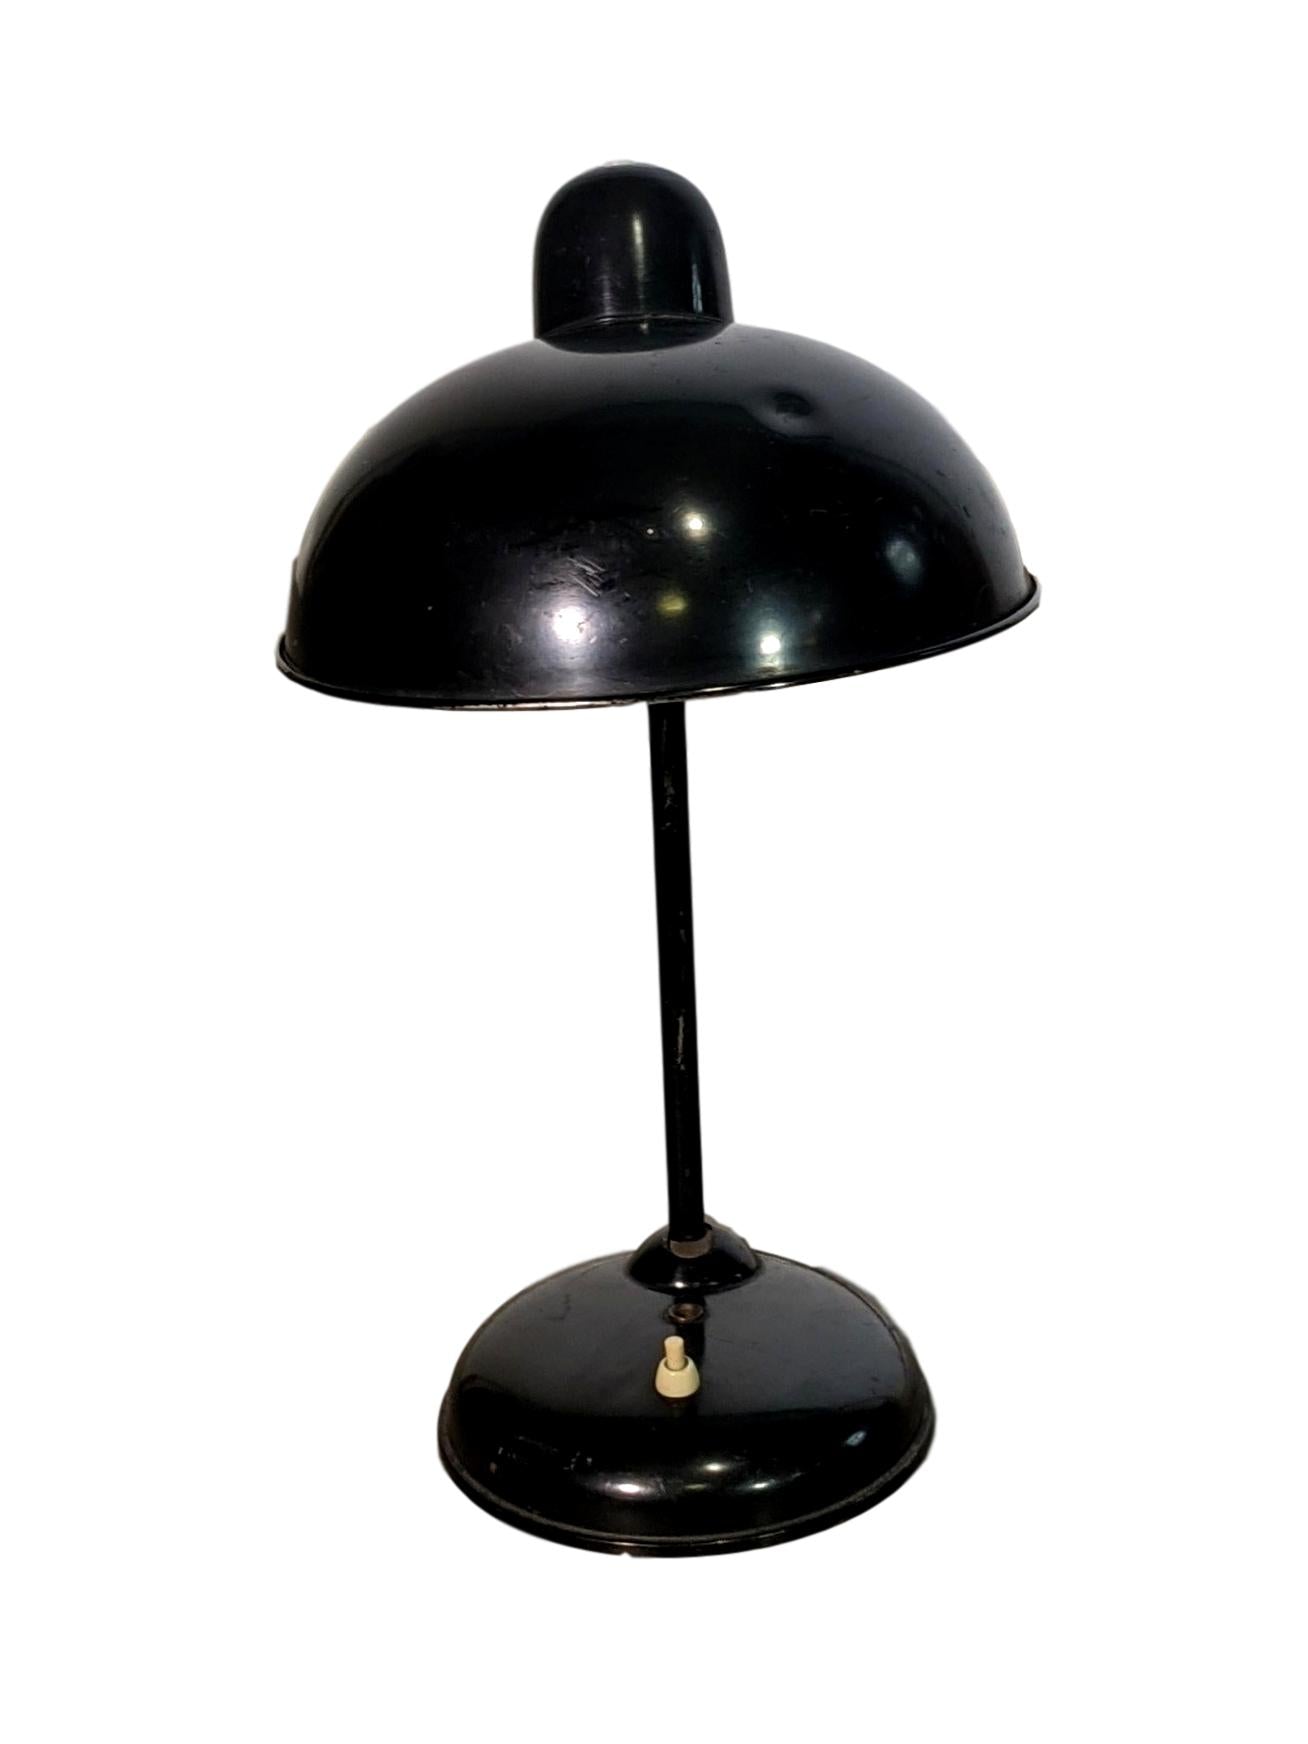 1950s Bauhaus Desk Lamp by Christian Dell for Helo Leuchten